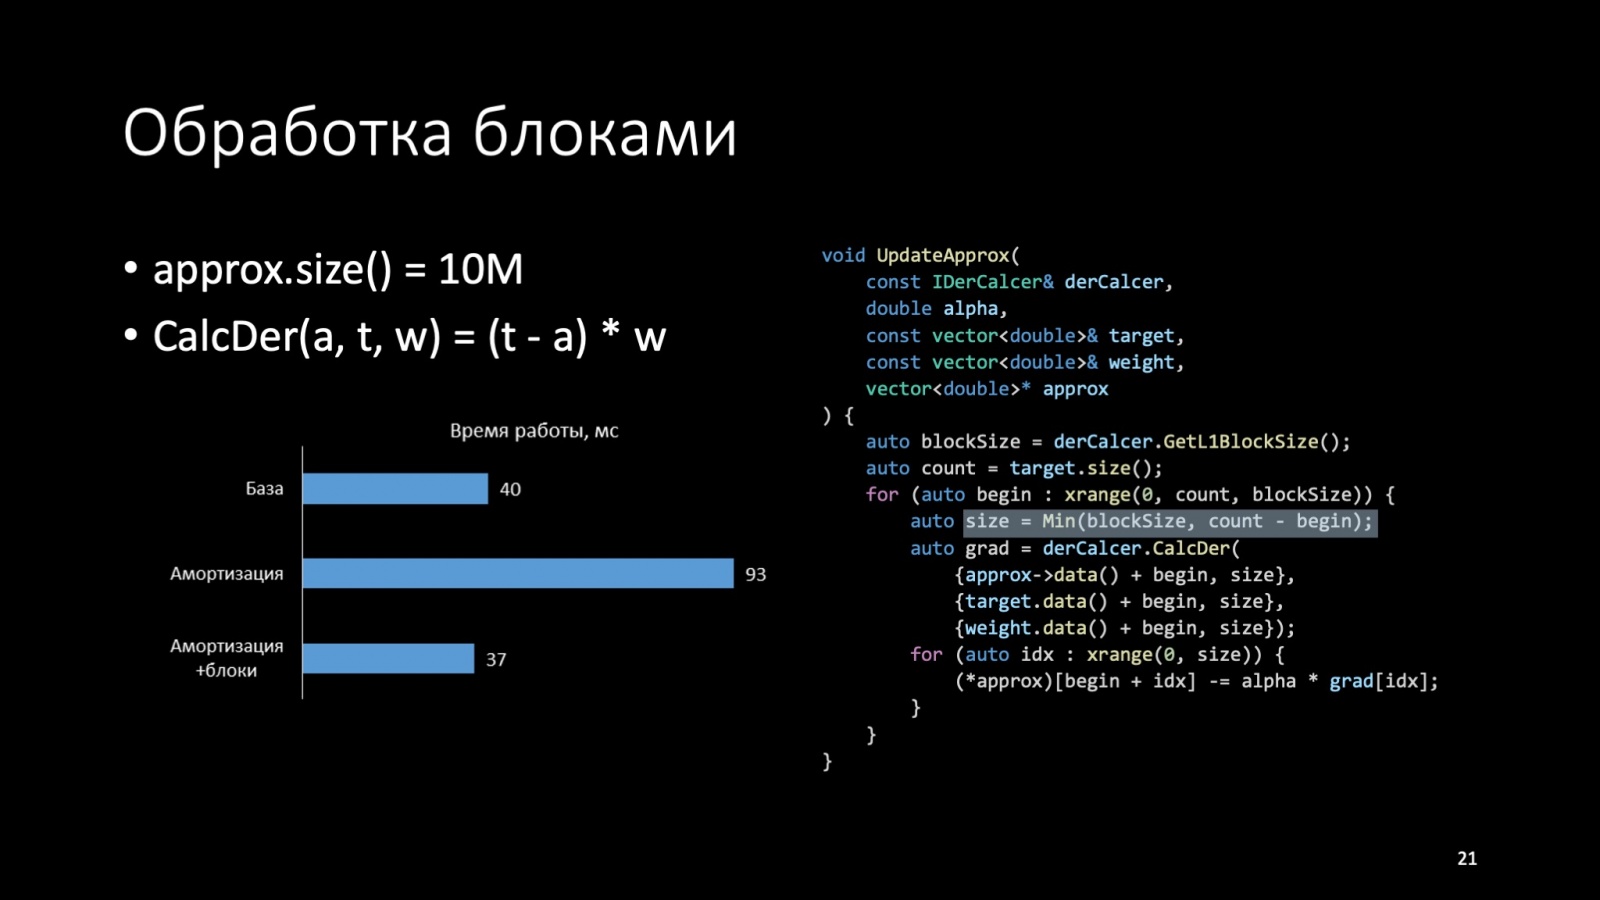 Оптимизация C++: совмещаем скорость и высокий уровень. Доклад Яндекса - 21